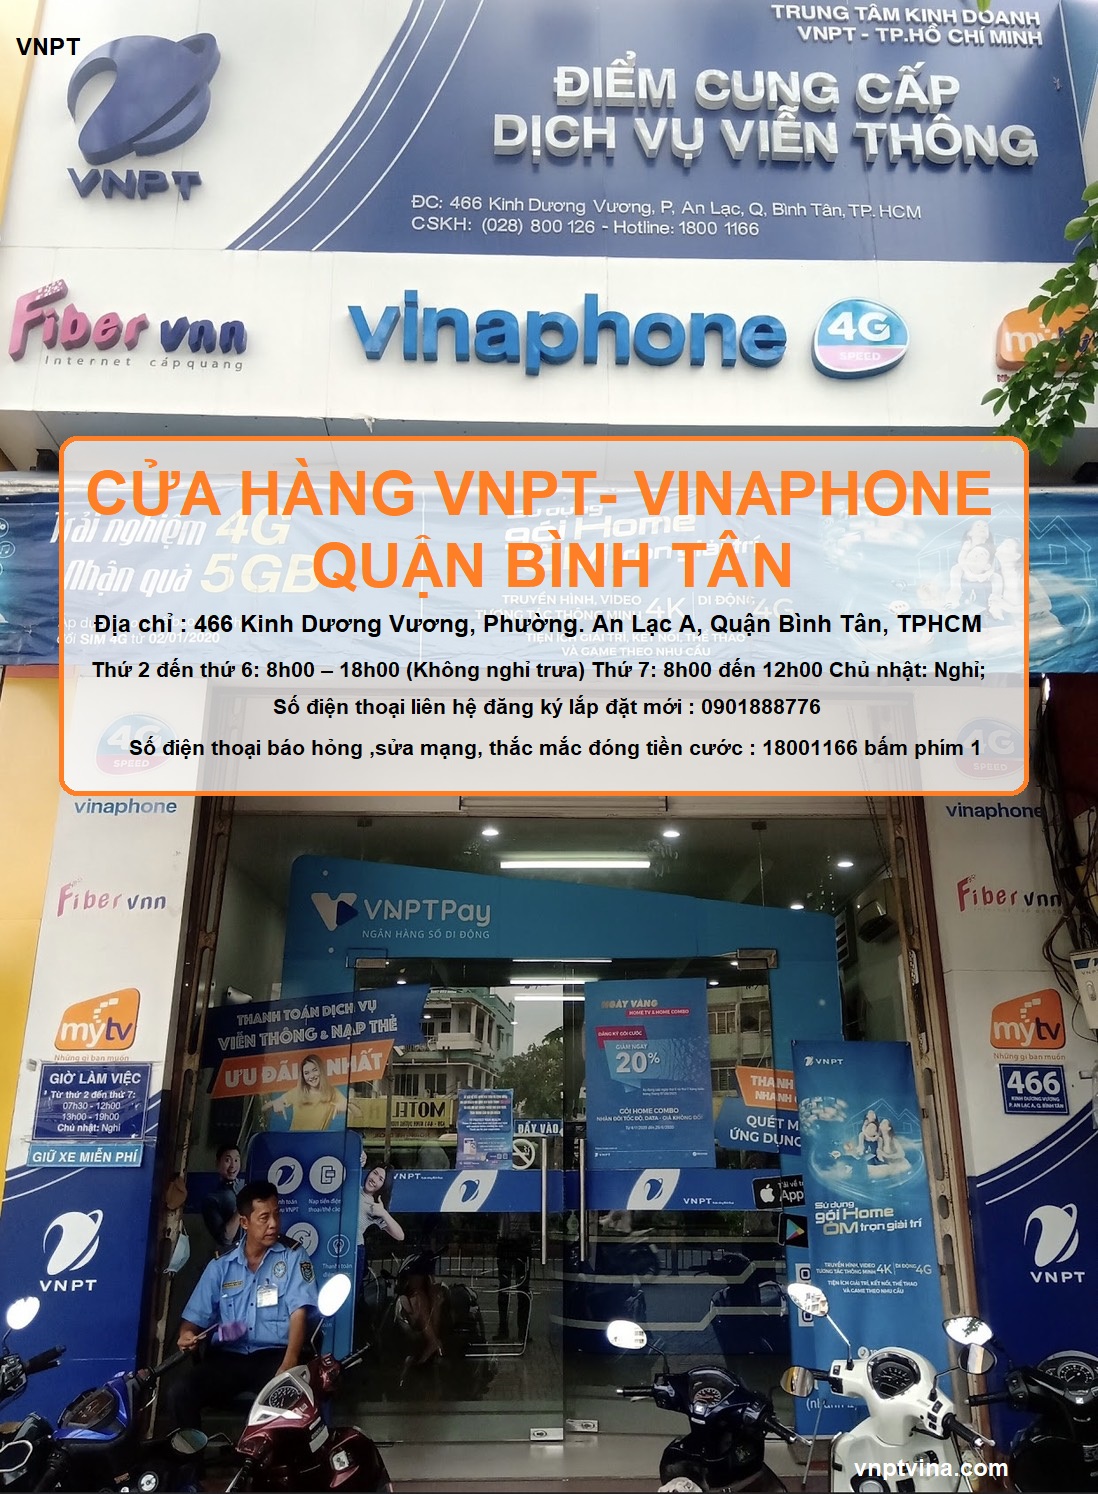 cửa hàng VNPT quận Bình Tân - 466 Kinh Dương Vương, Phường. An Lạc A, Quận Bình Tân